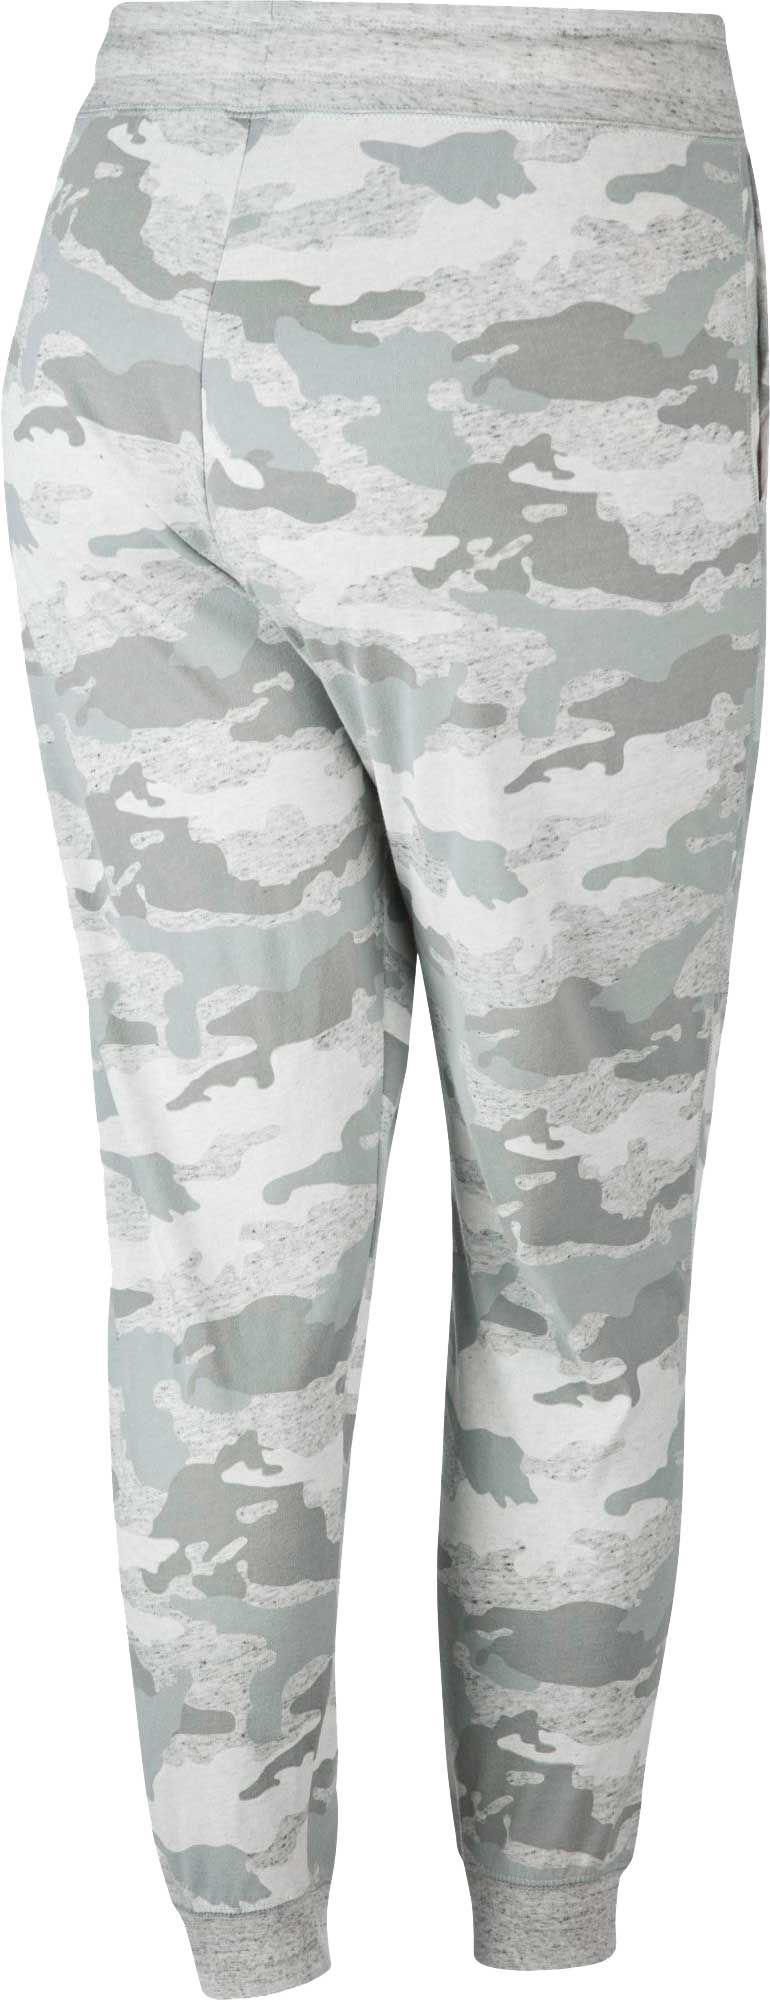 light grey camo pants